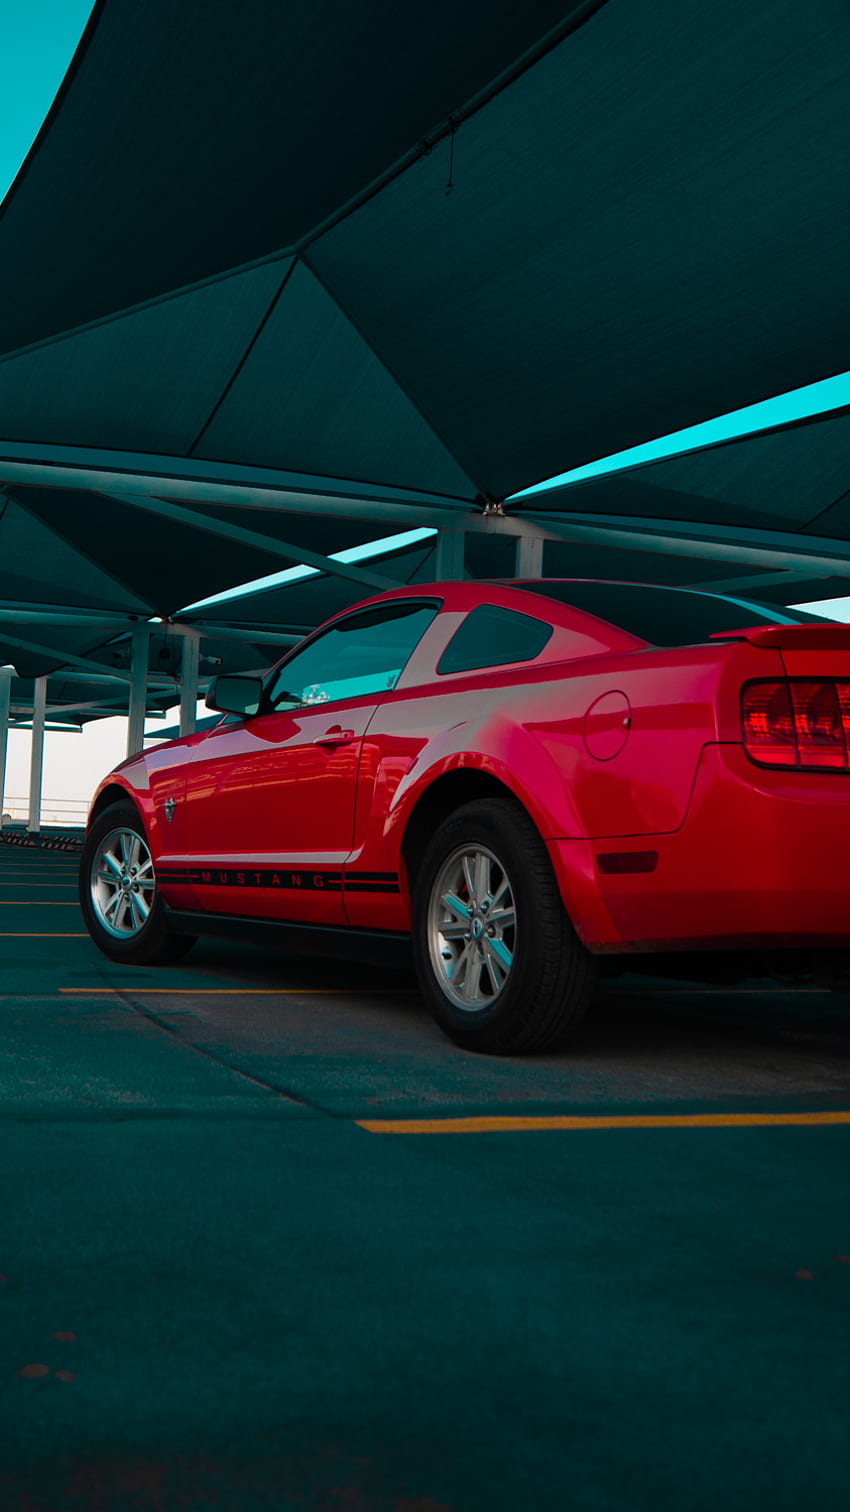 Mustang, carro, iluminaciones, auto, brillante, rojo, automotriz HD phone wallpaper